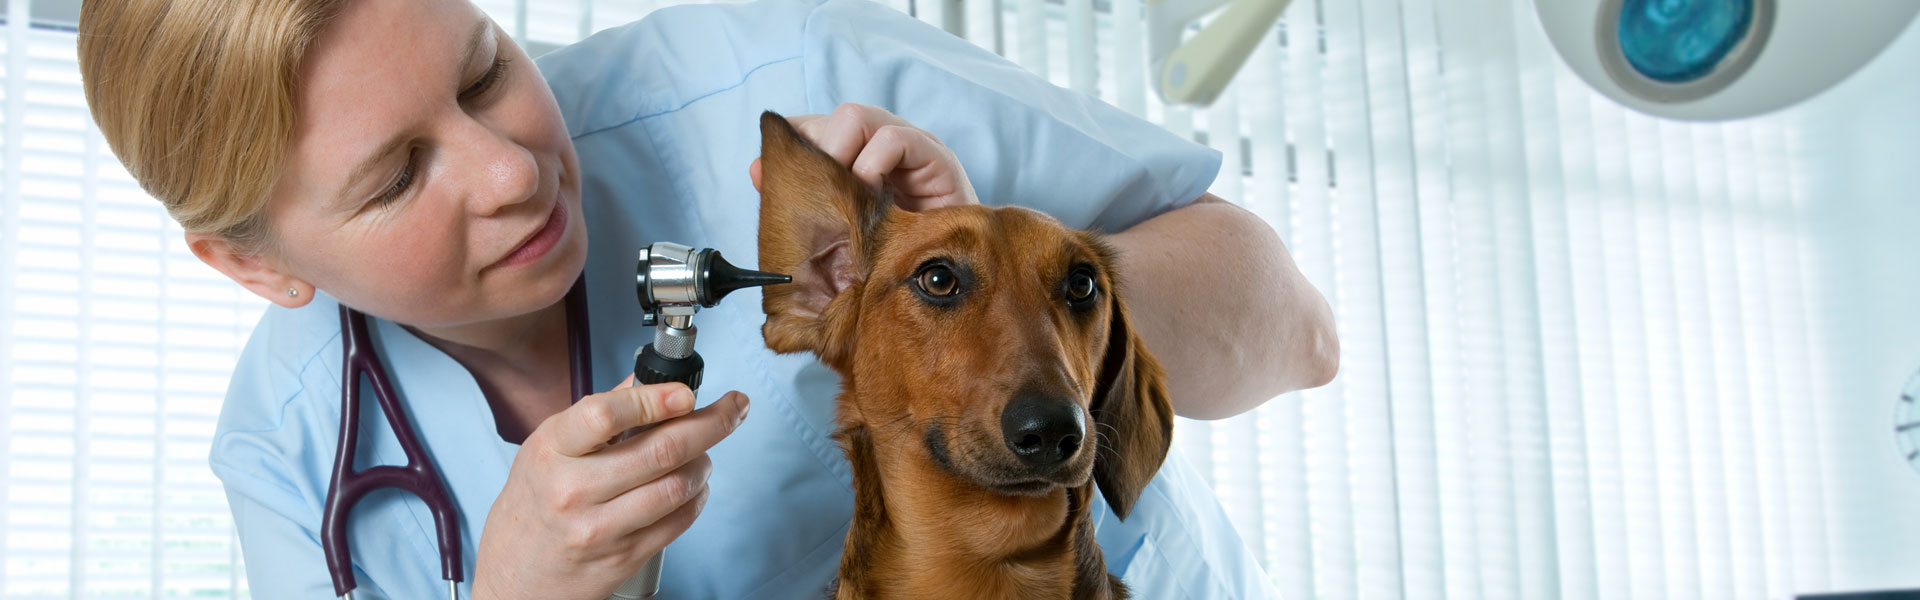 Veterinary doctor examining dog ear